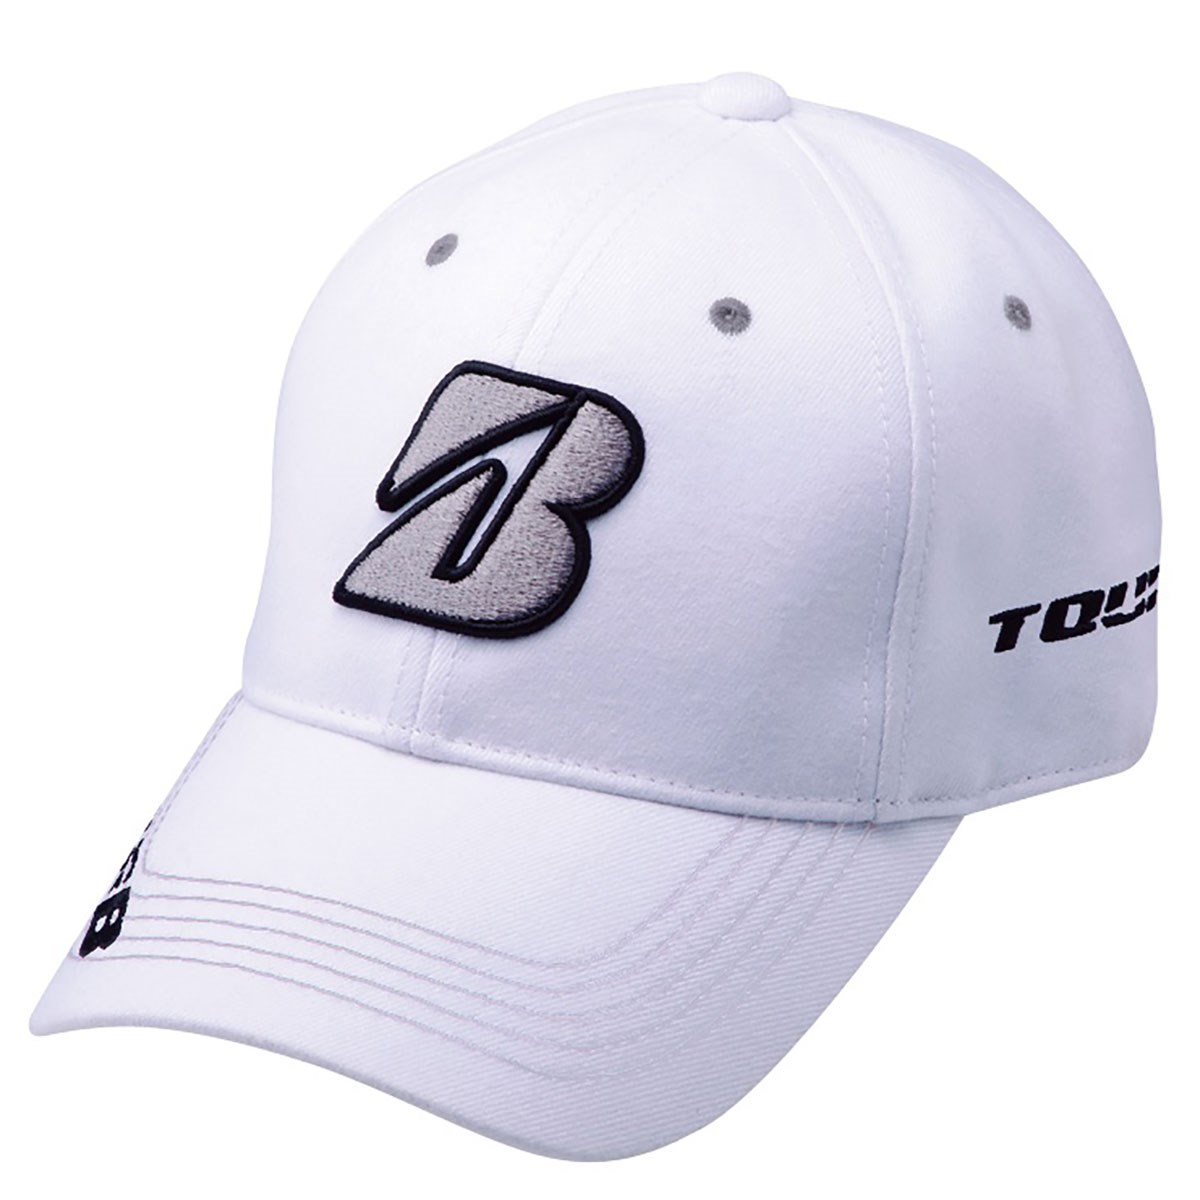  [2018年モデル] ブリヂストン プロモデルキャップ ゴルフウェア 帽子